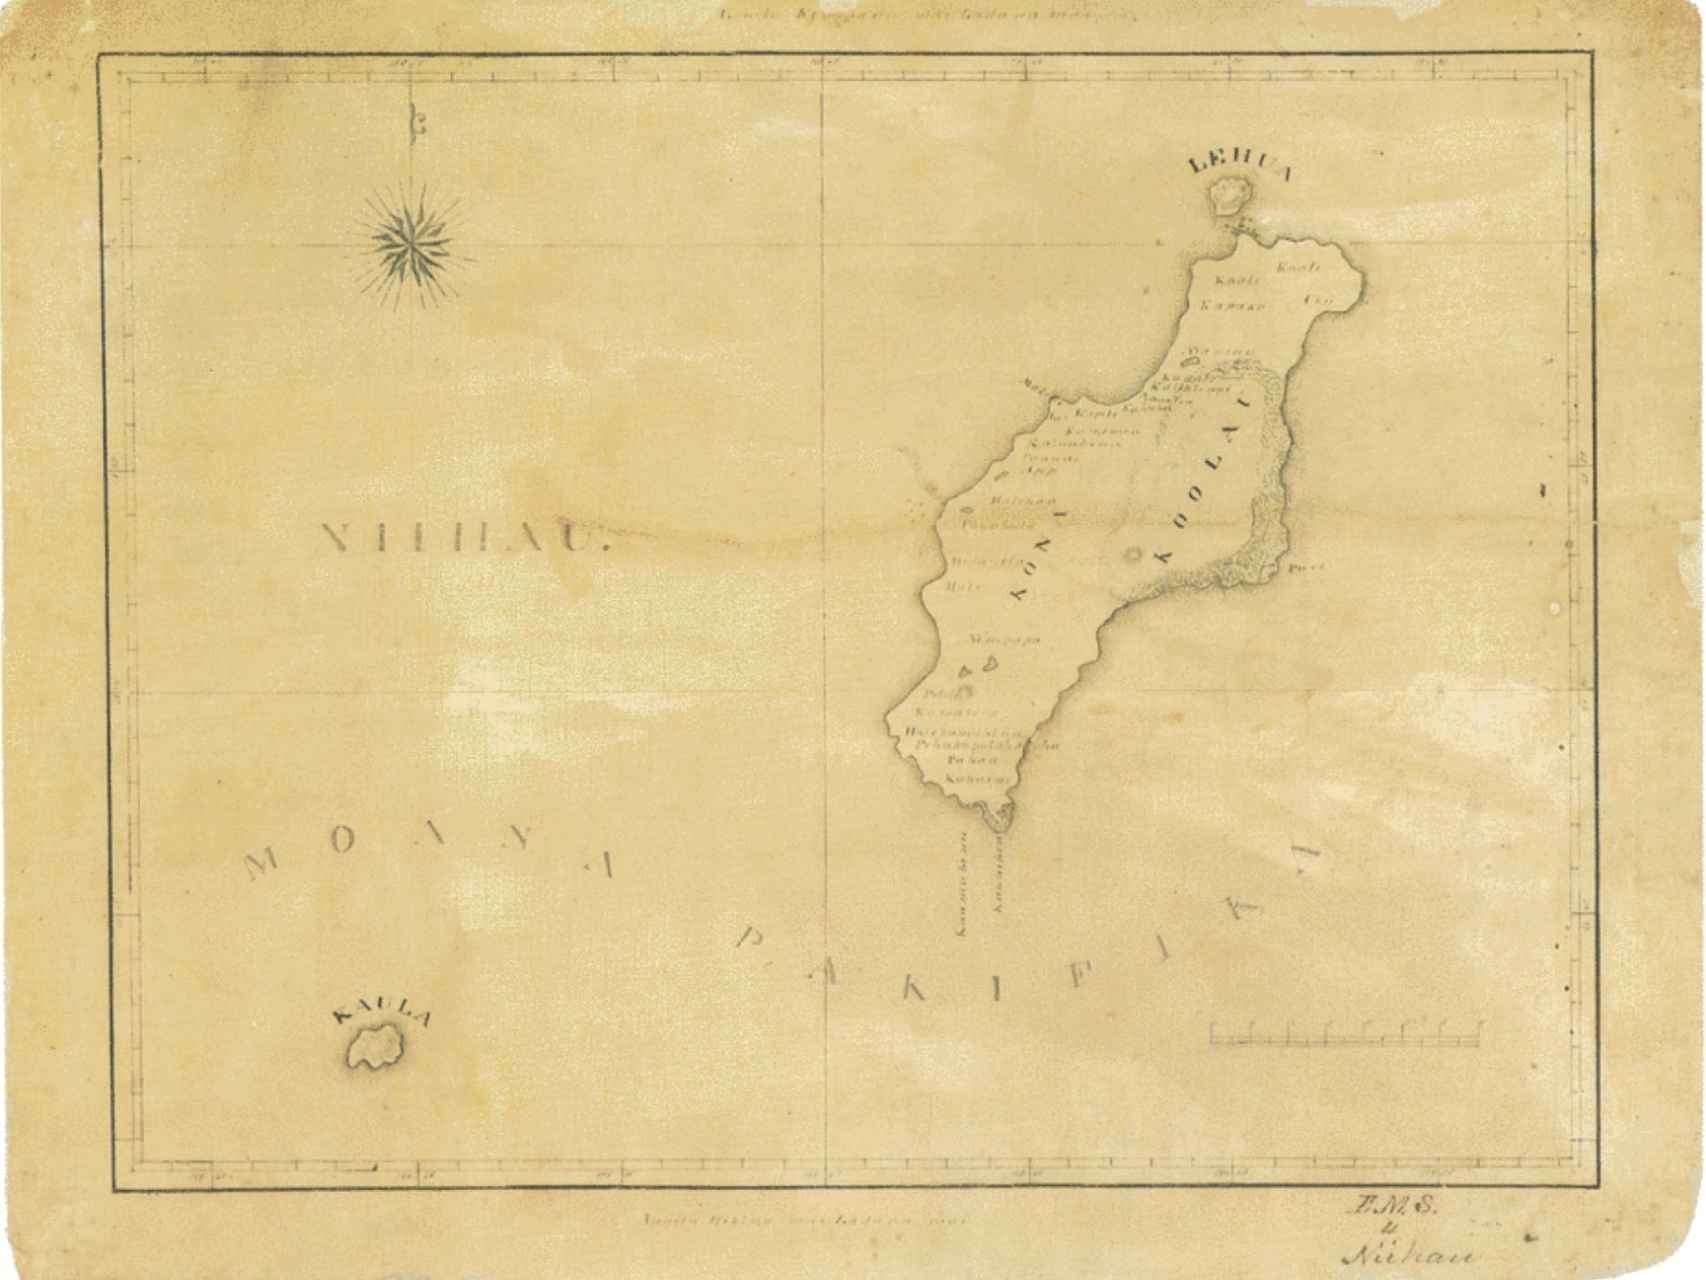 Mapa de la isla de Niihau.